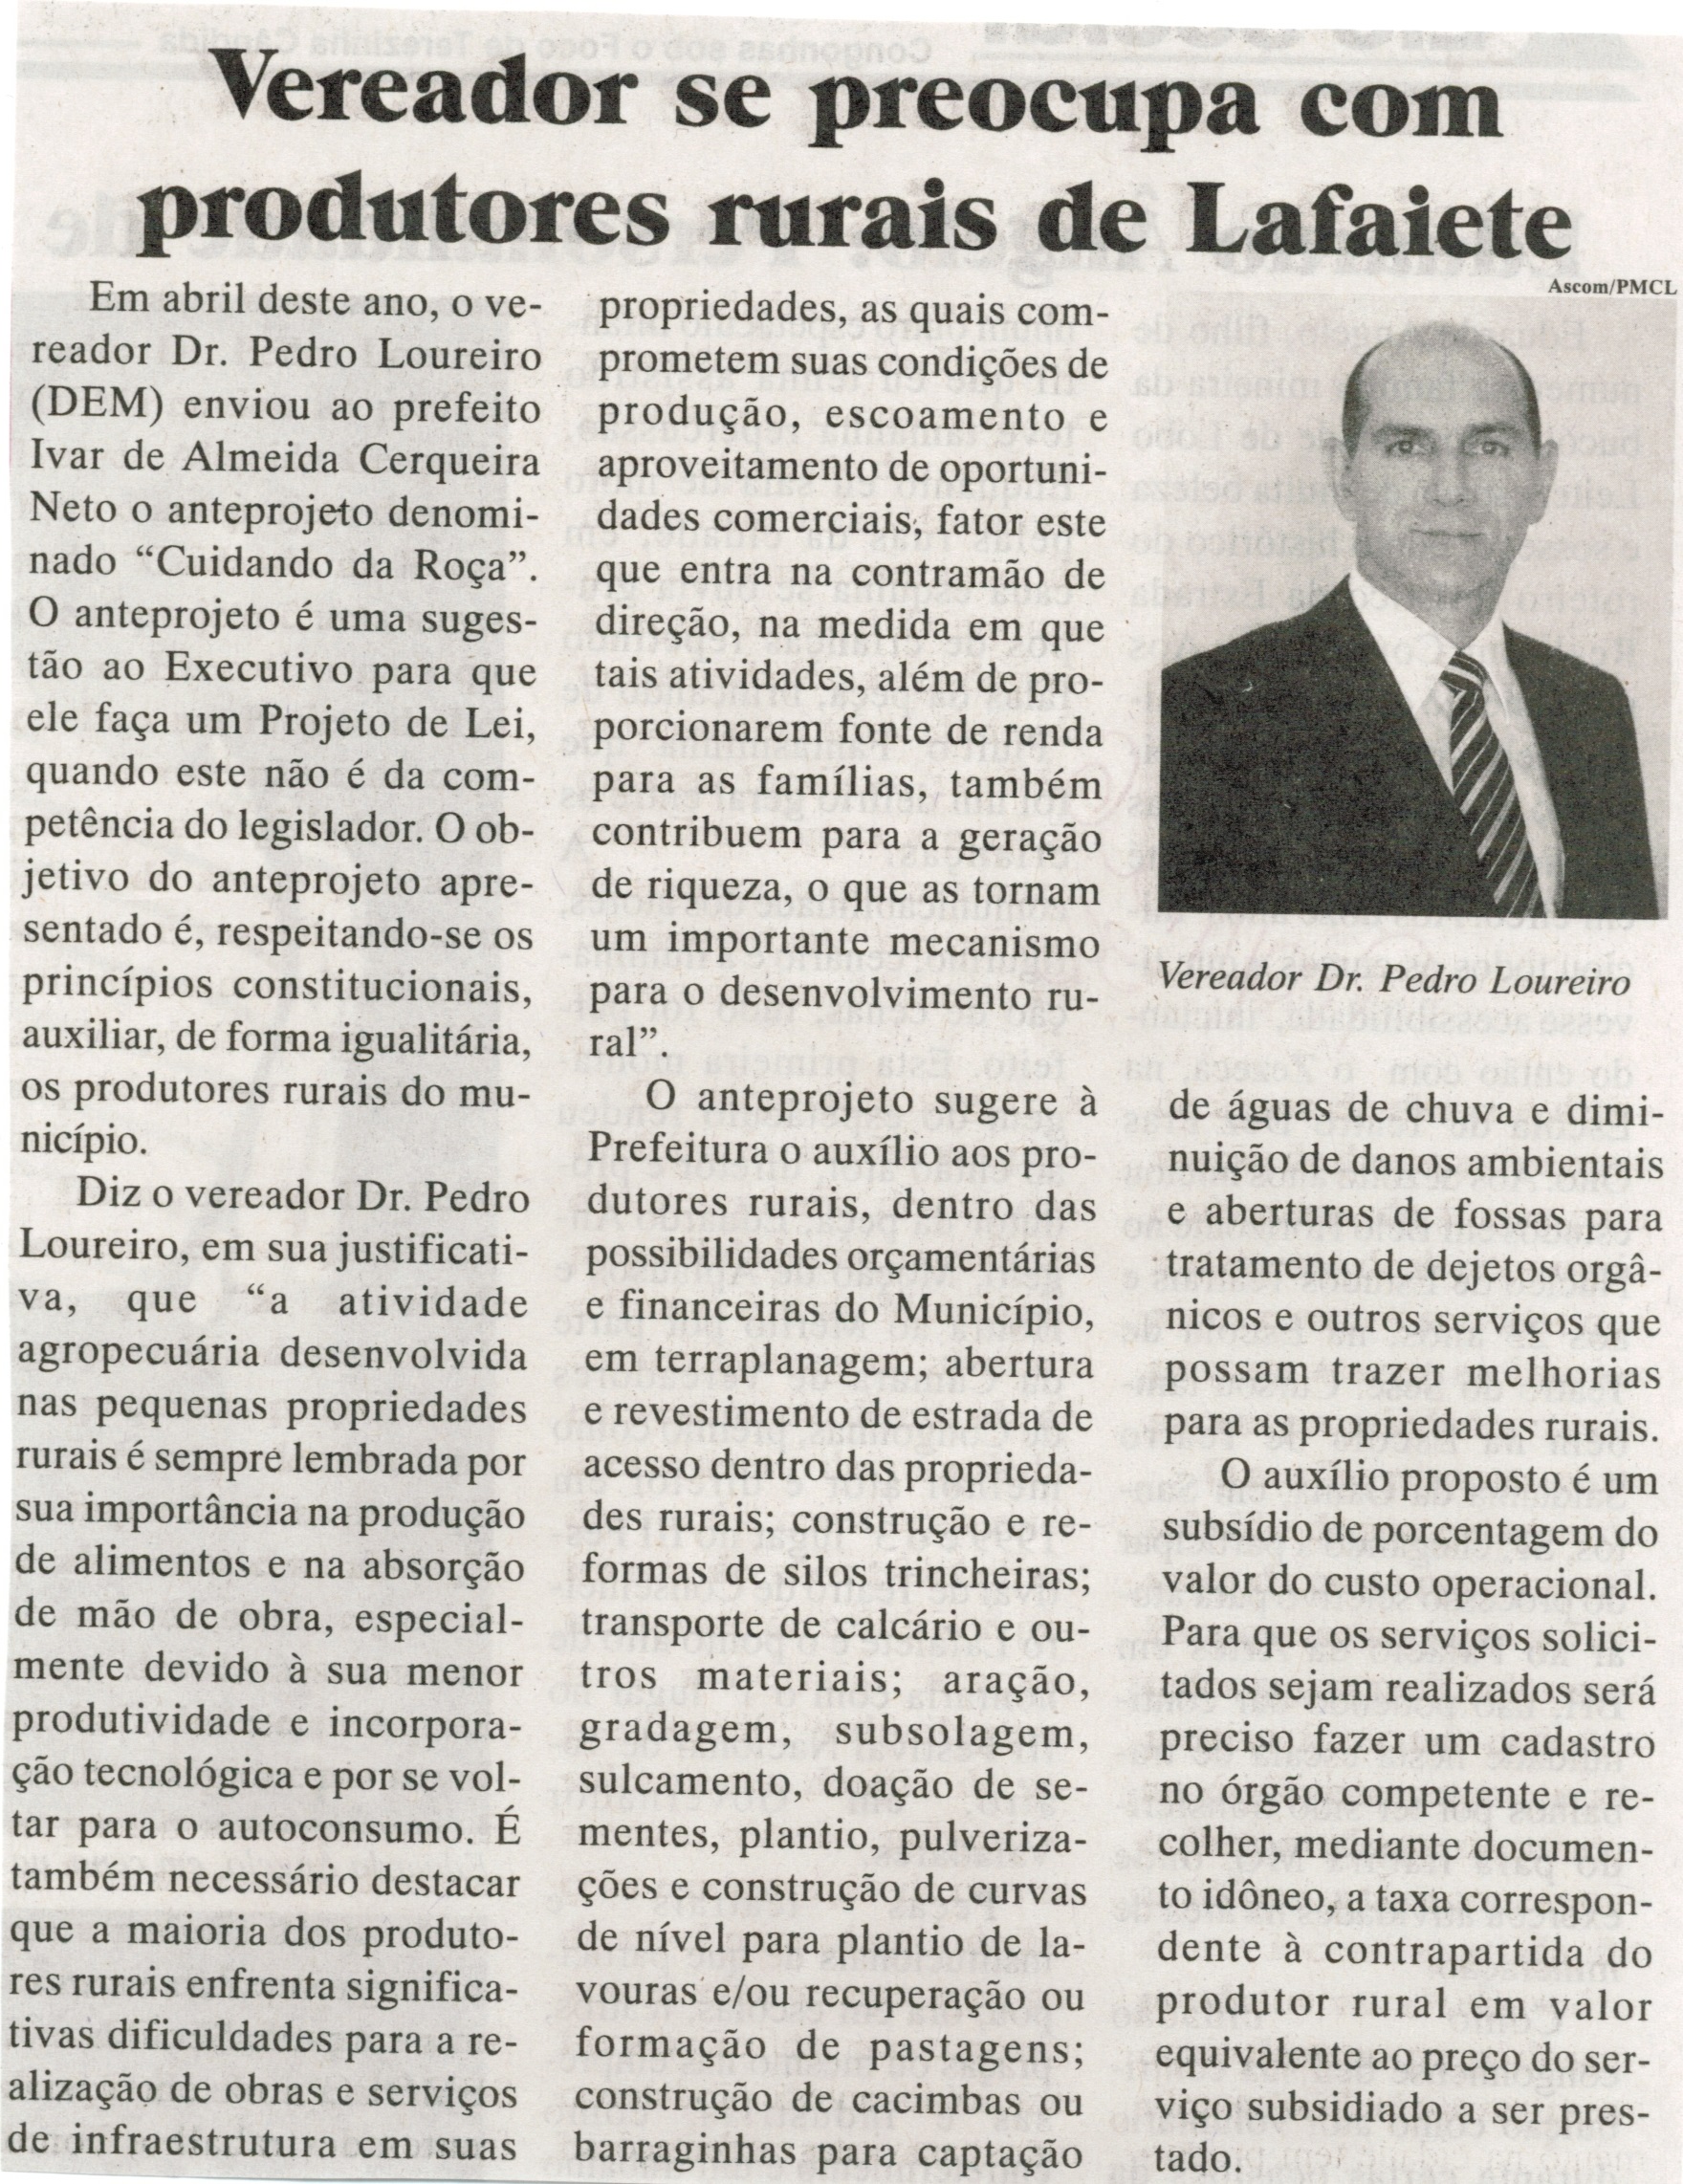 Vereador se preocupa com produtores rurais de Lafaiete. Jornal Baruc, Congonhas, 04 set. 2014, p. 6.